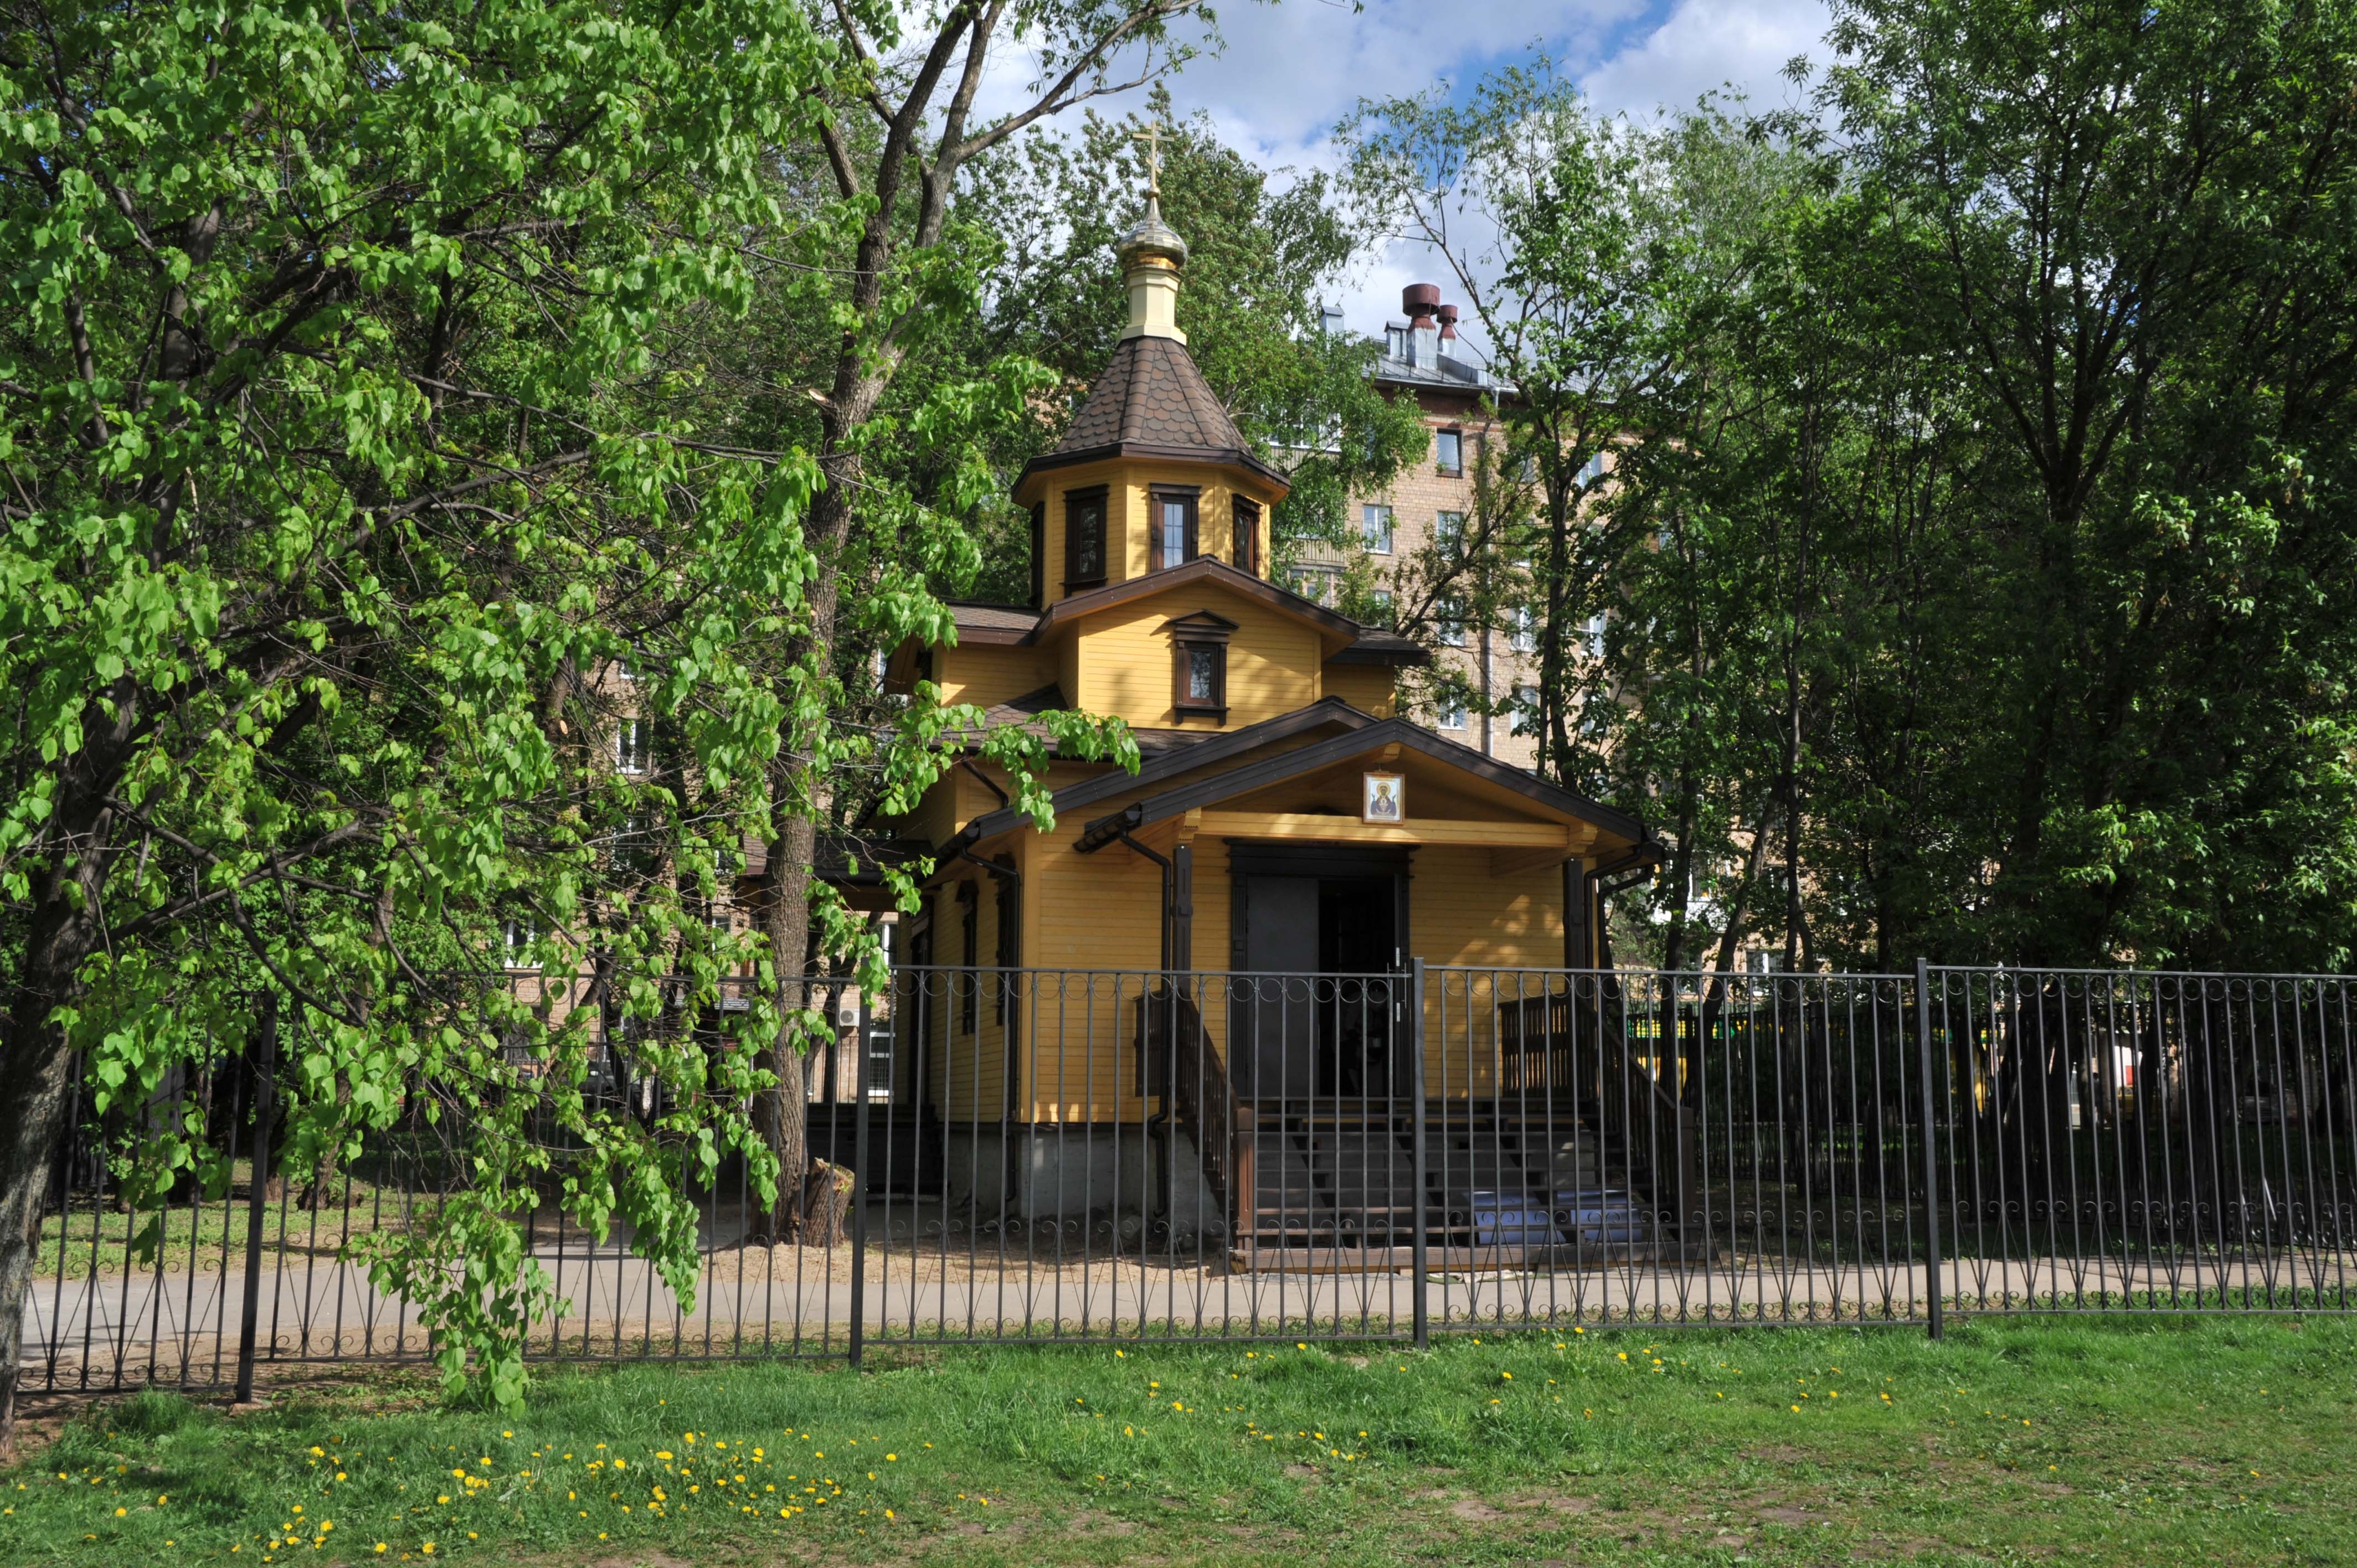 Москва побила рекорд по строительству храмов шаговой доступности. А что Петербург?